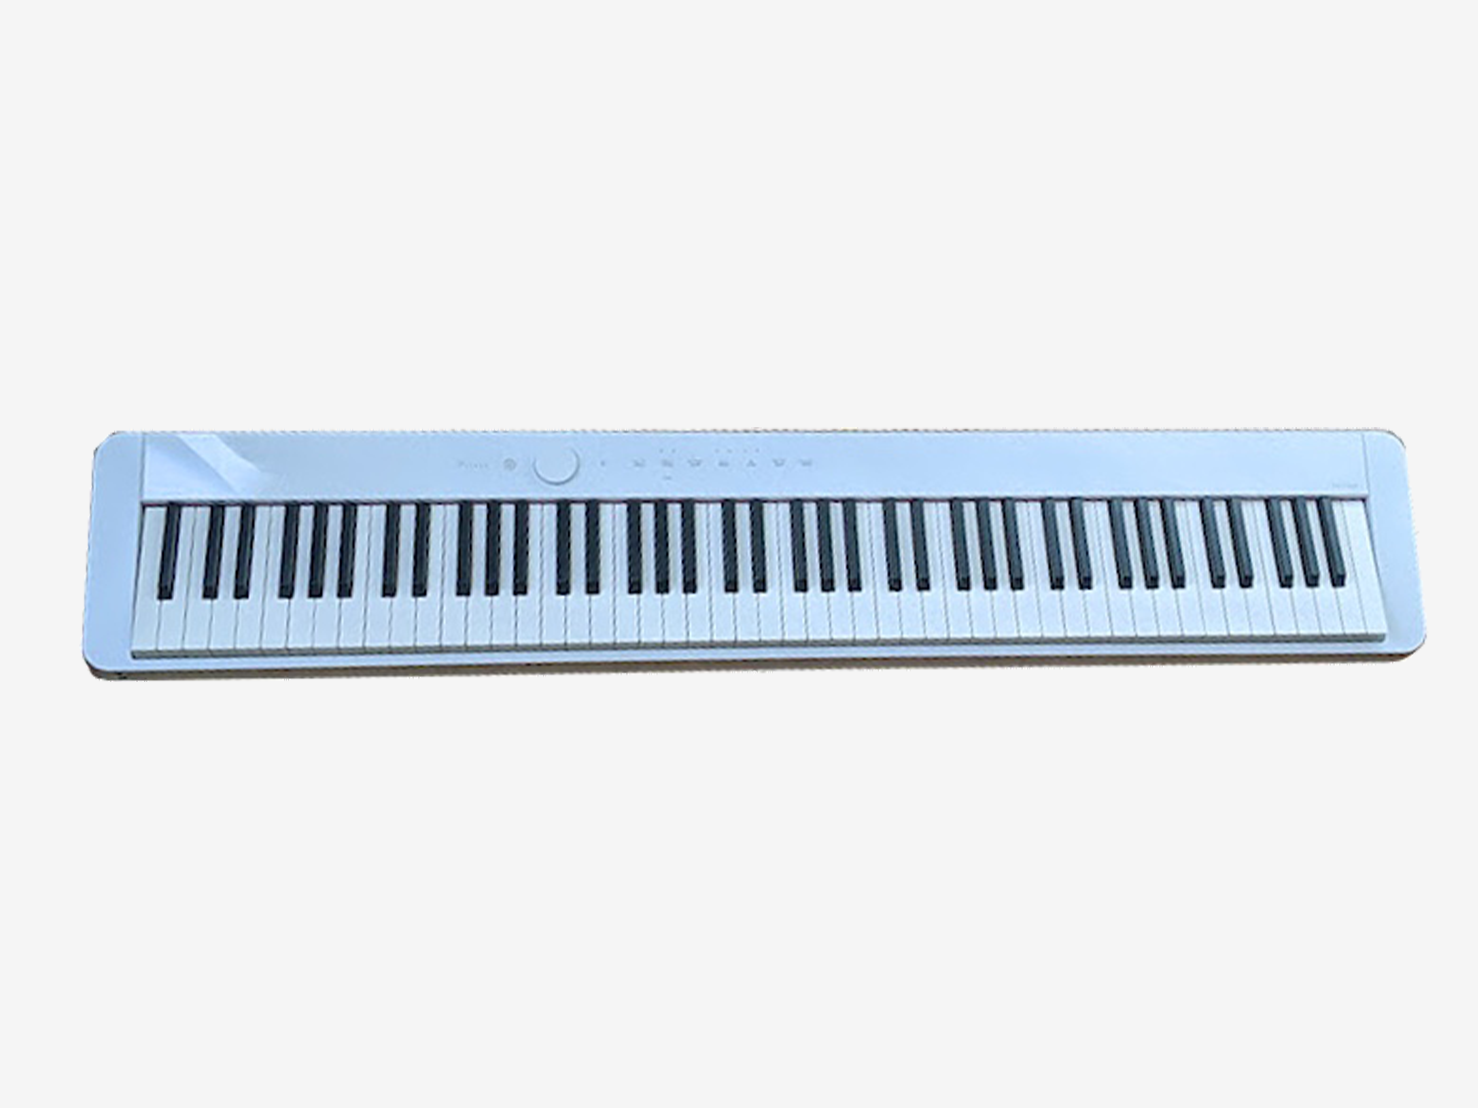 デジタルピアノ PX-S1000(CASIO)